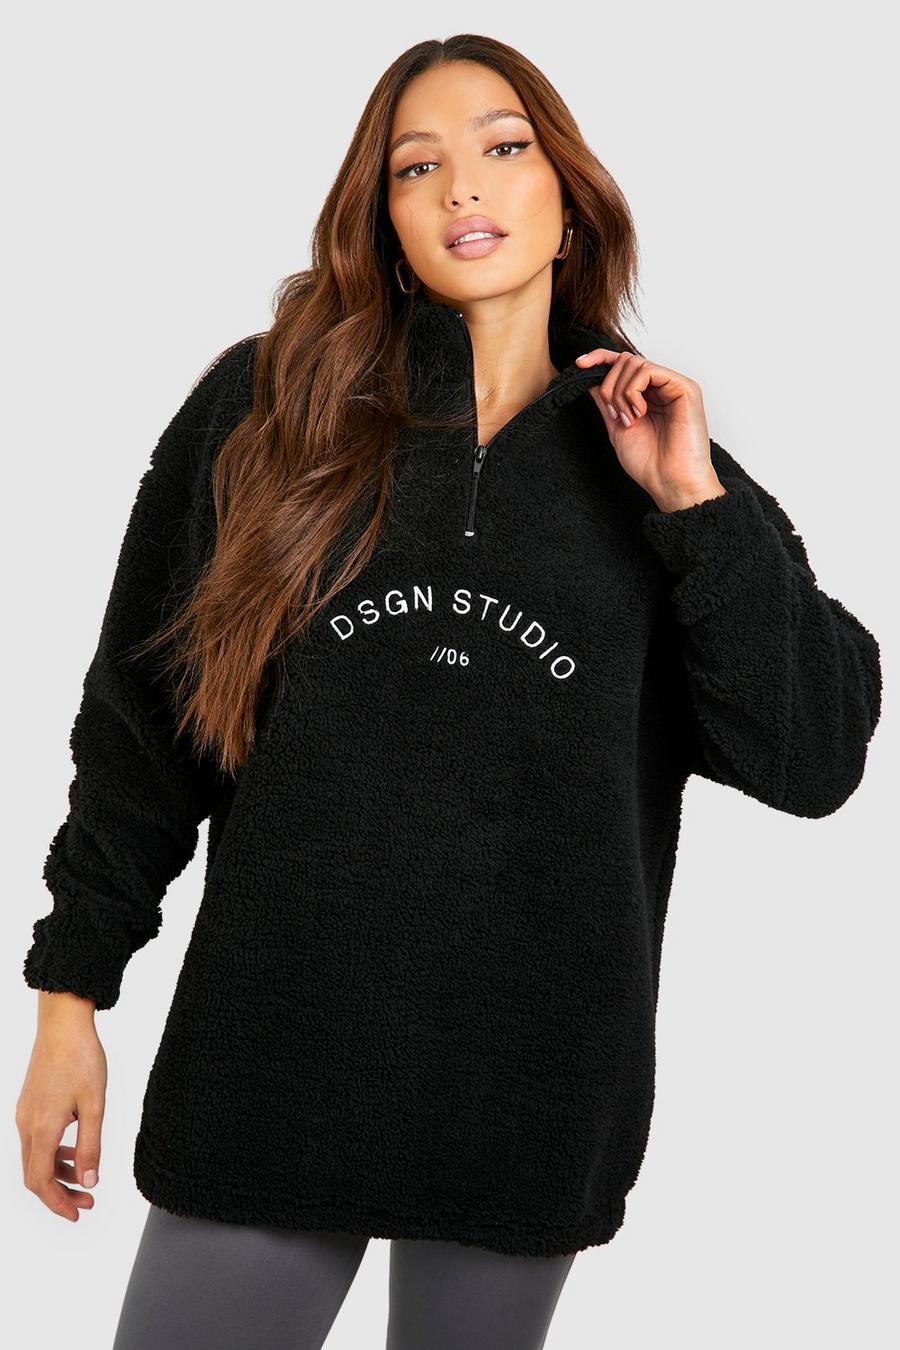 Black Tall Dsgn Studio Premium Borg Embroidered Half Zip Sweater